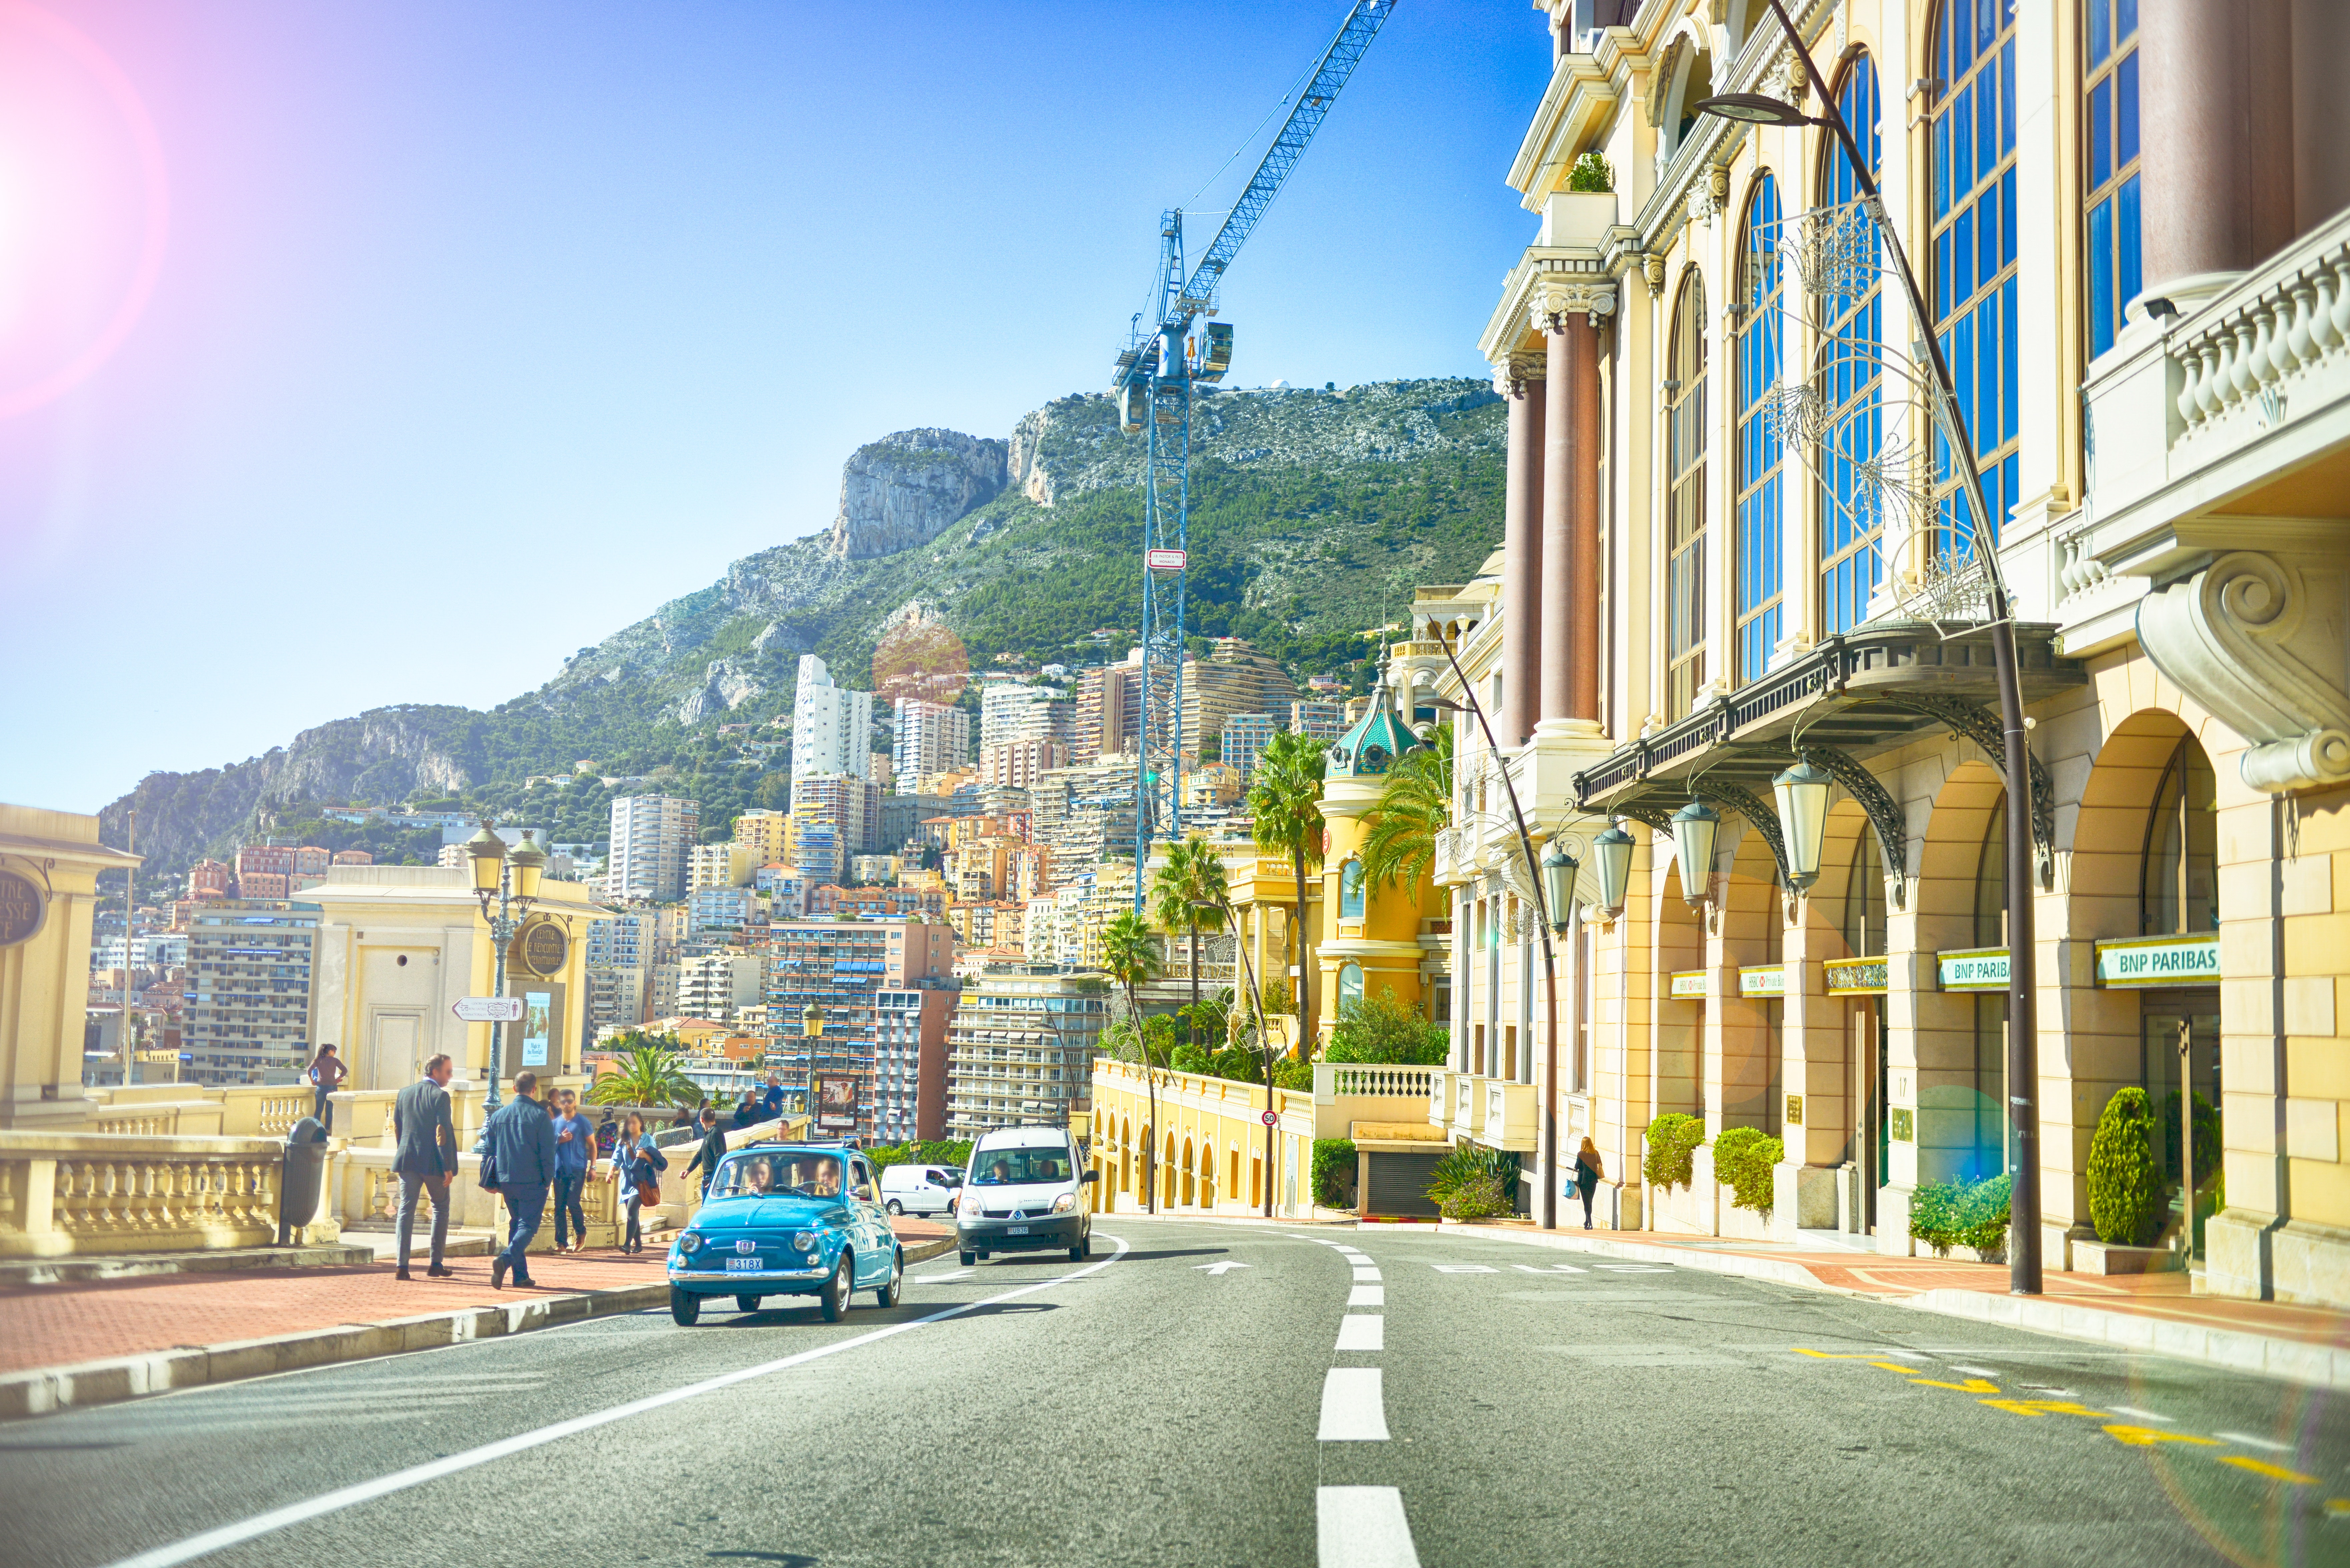 En väg i Monte Carlo